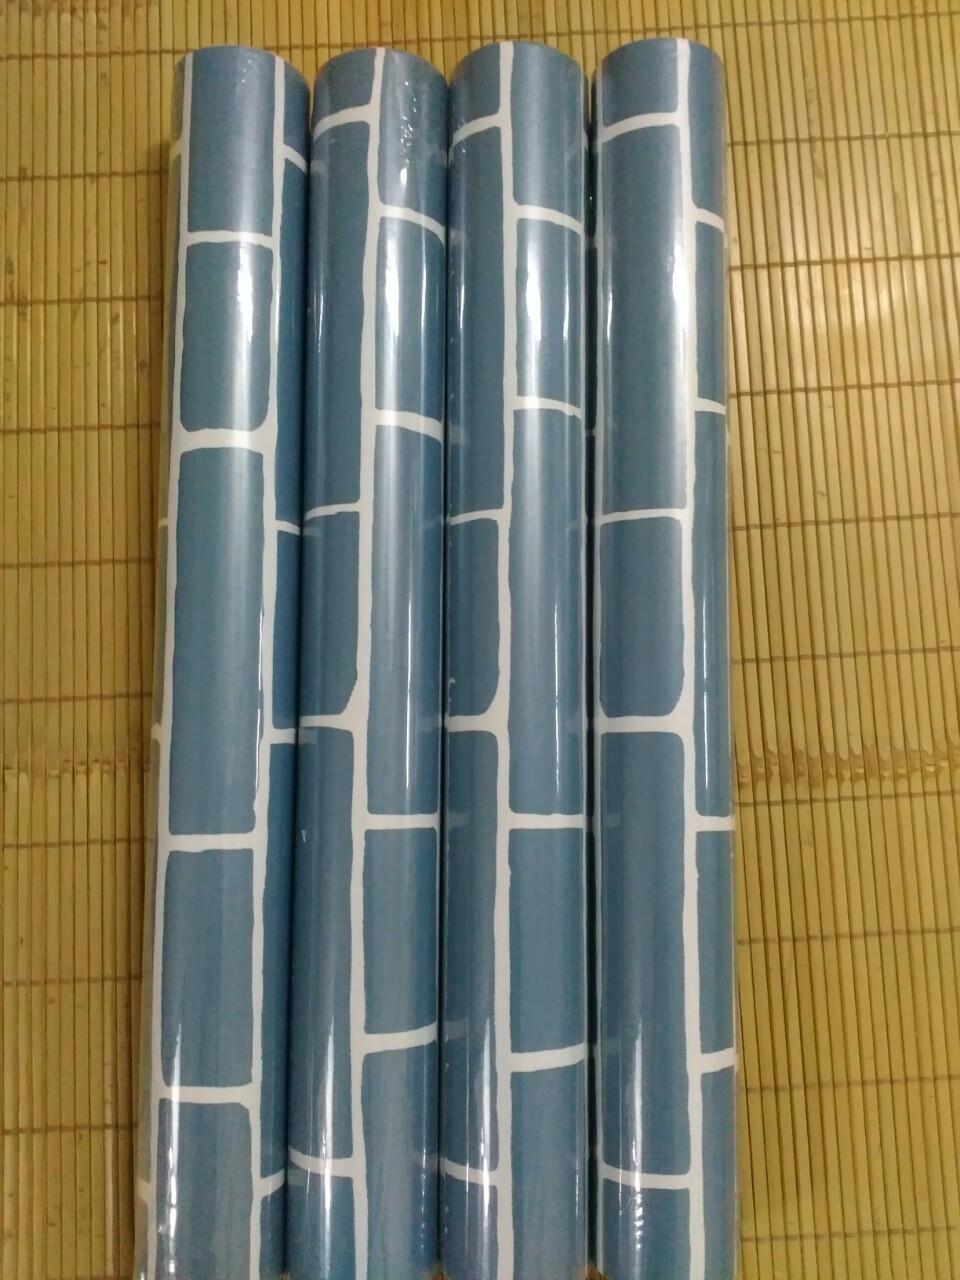 Giấy dán tường Giả gạch màu xanh ( cuộn dài 10m khổ rộng 45cm, giấy có keo sẵn)